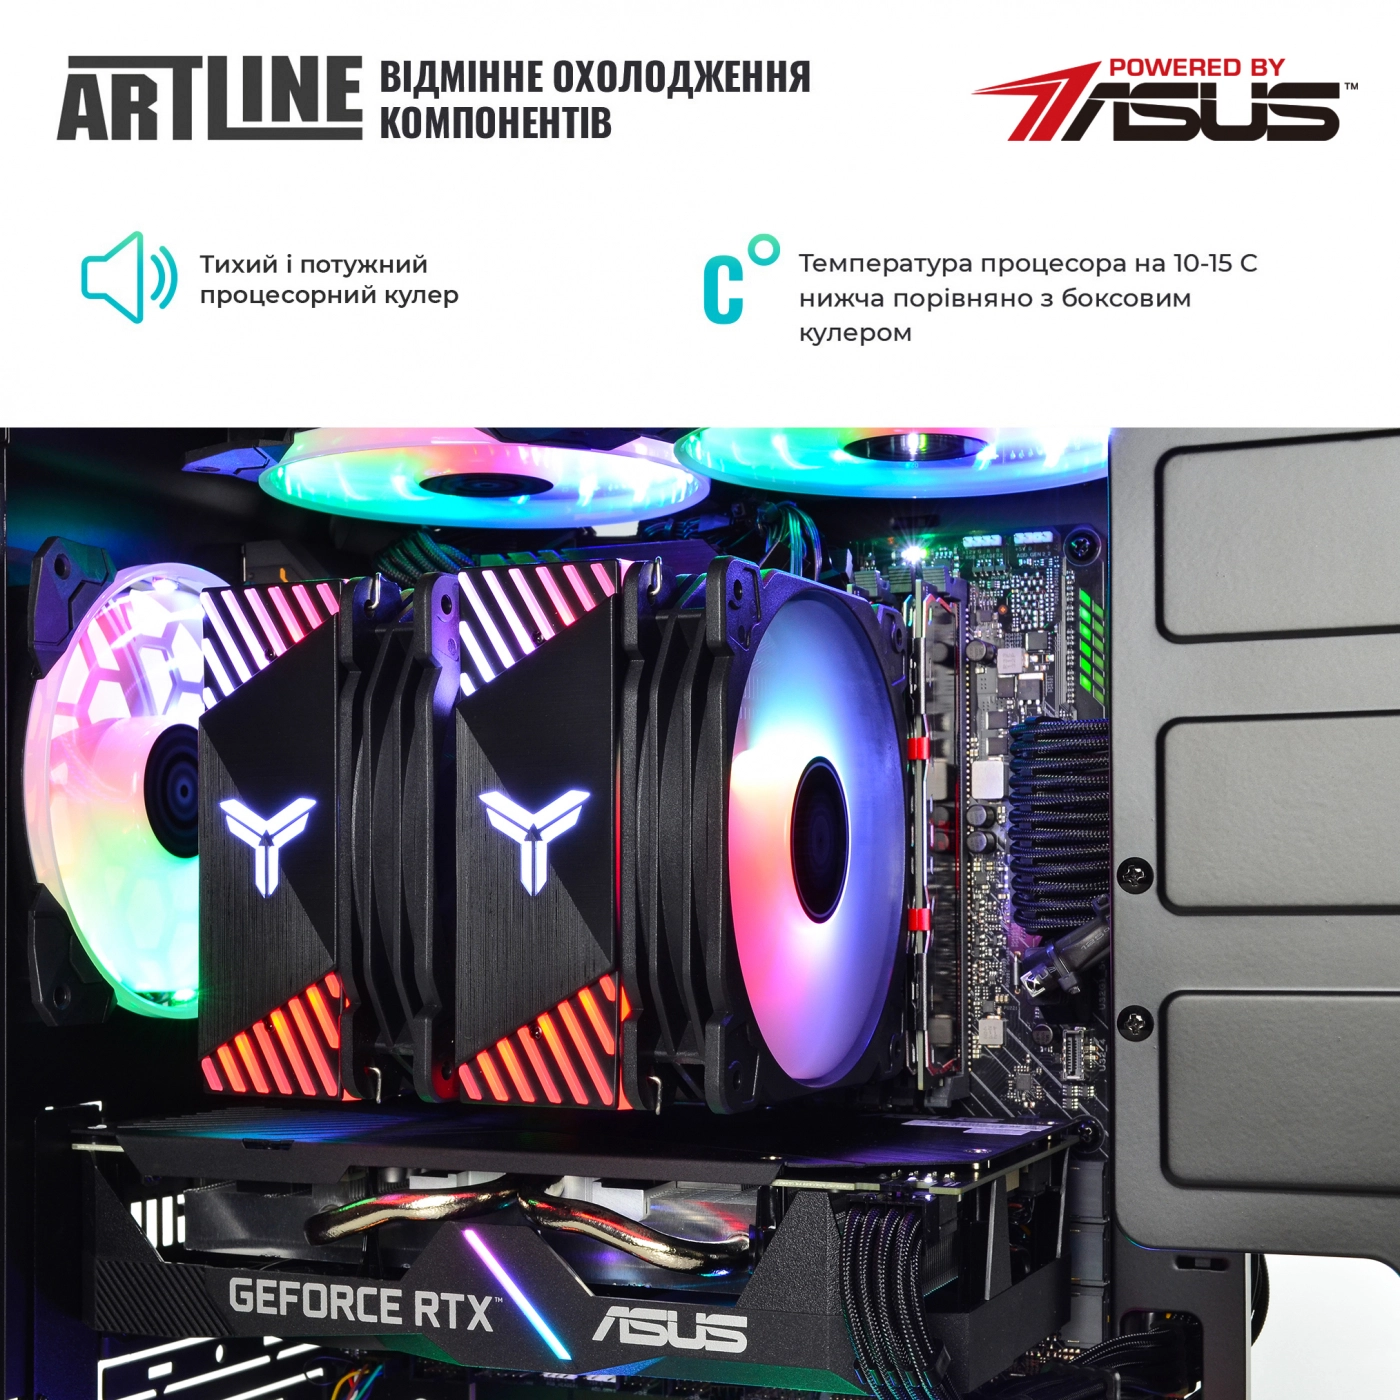 Купить Компьютер ARTLINE Gaming X75v31 - фото 5